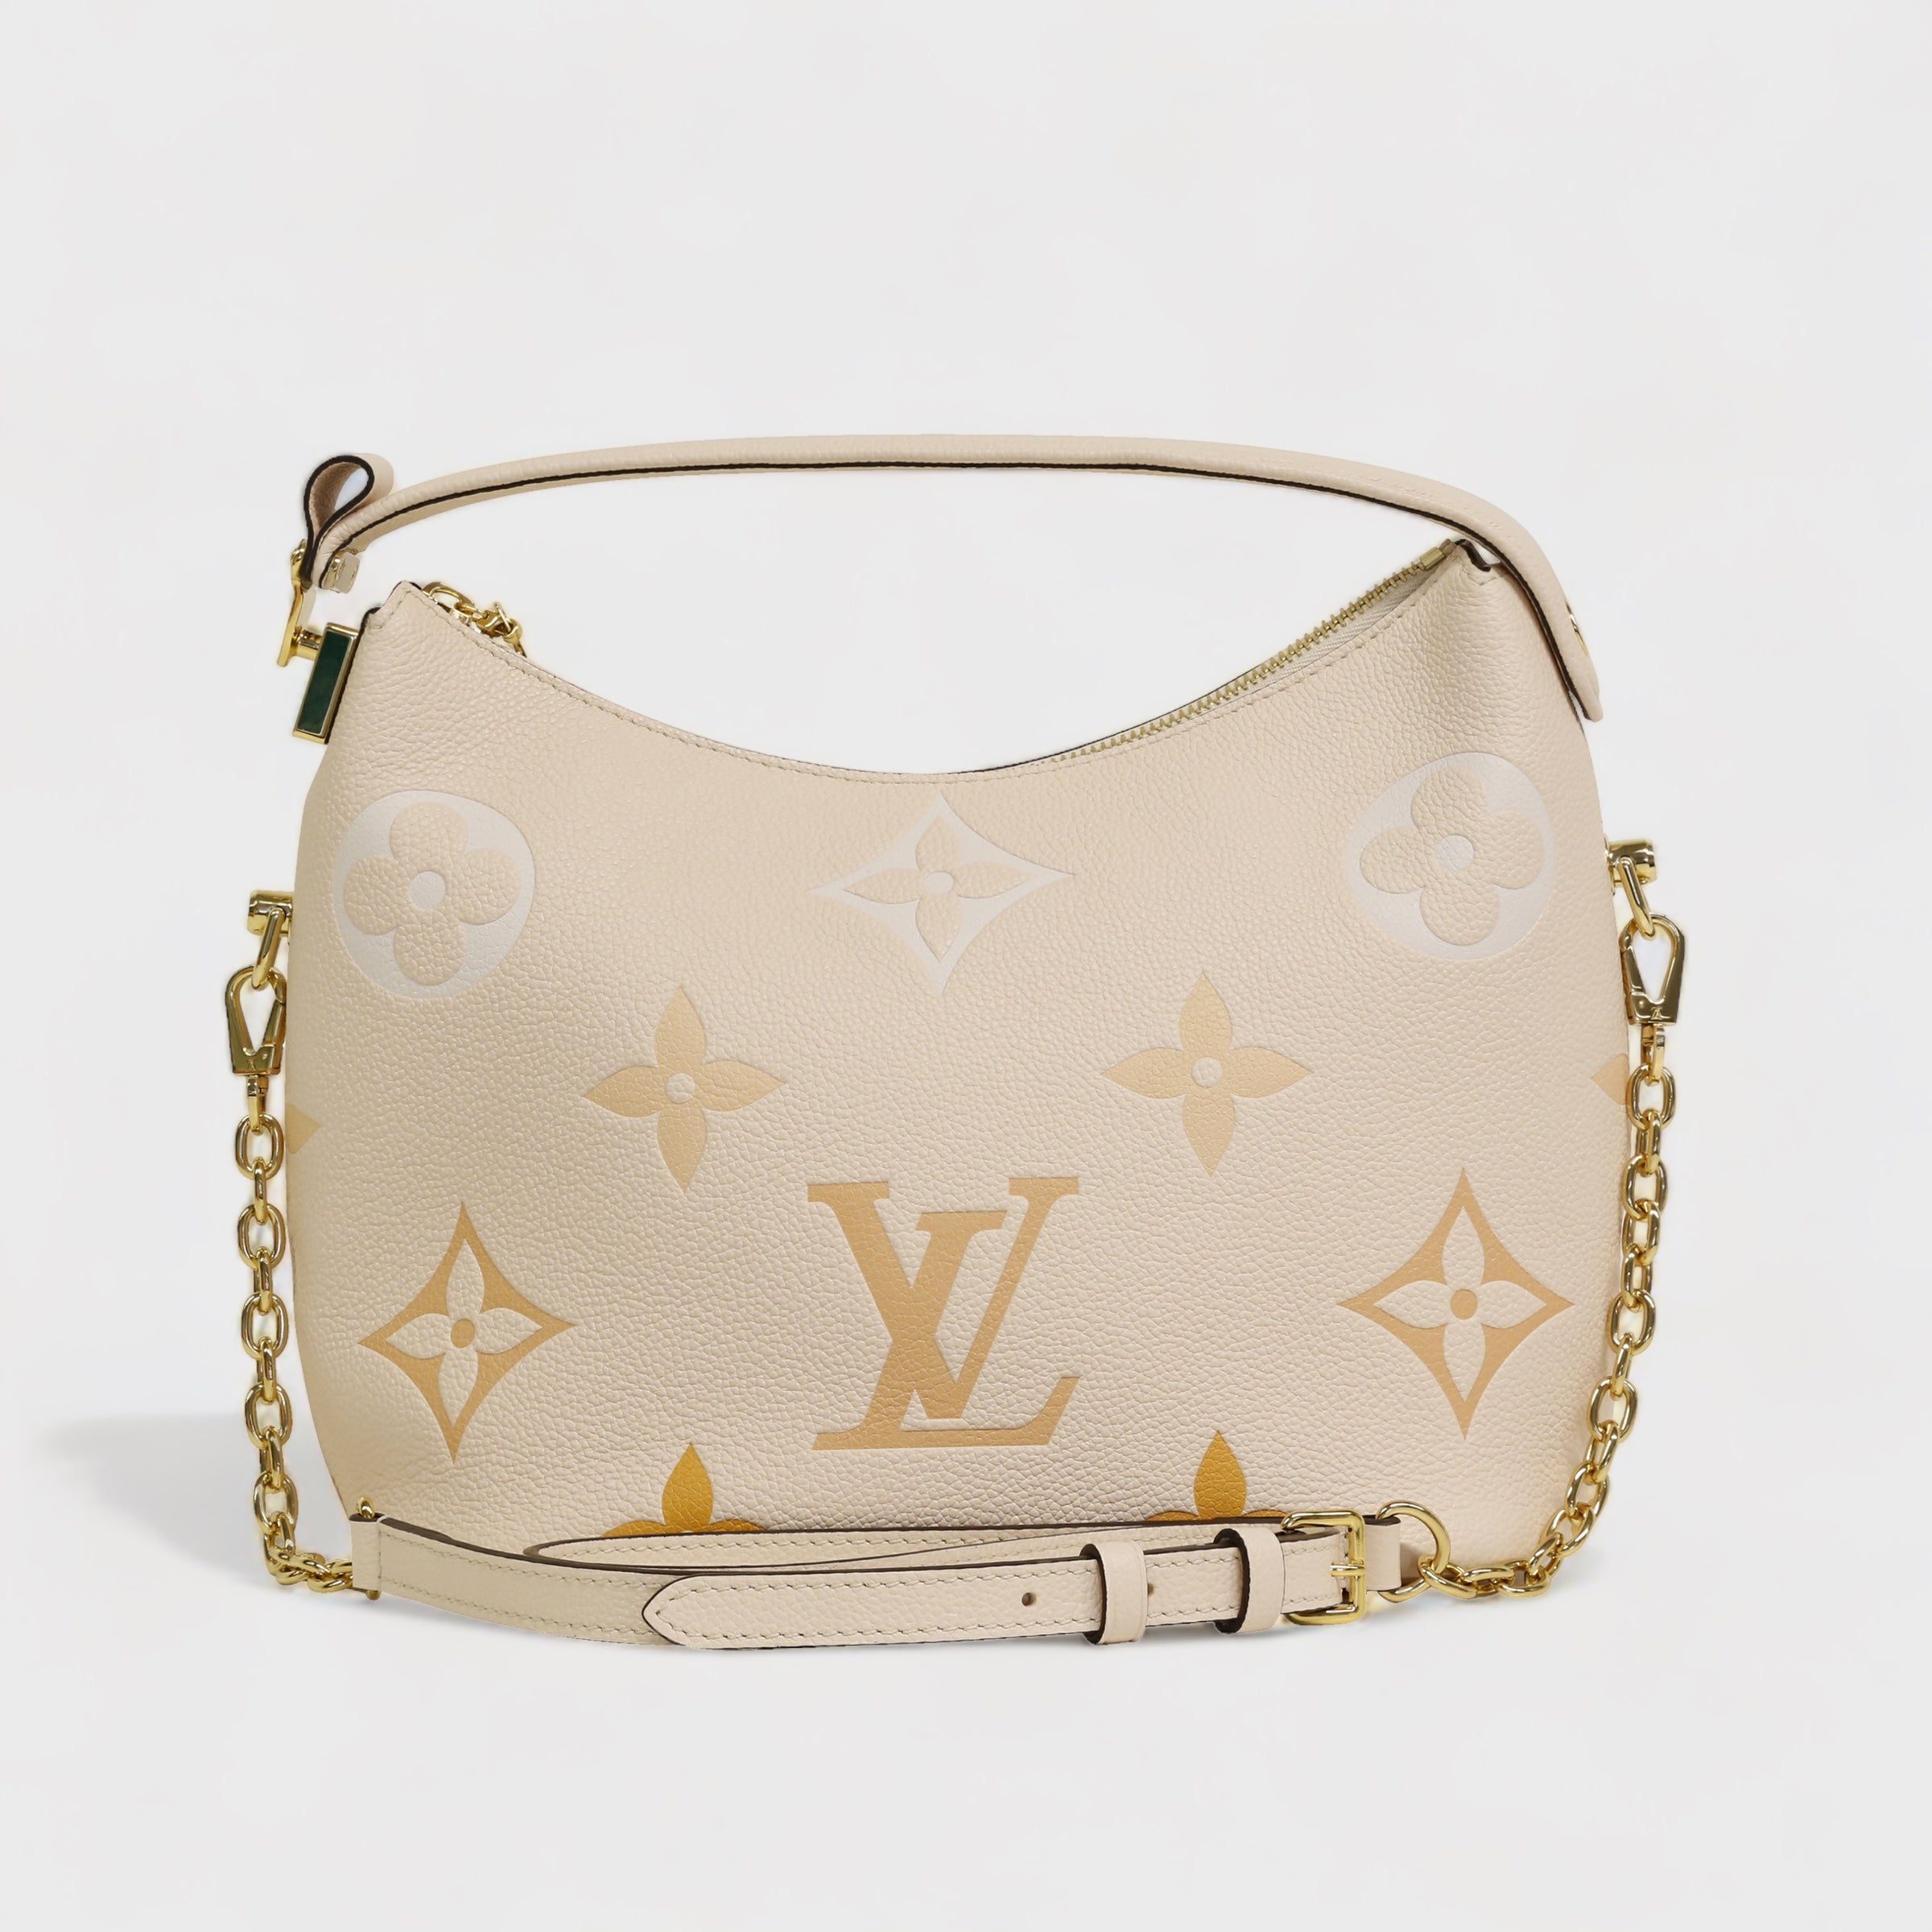 Second Hand Louis Vuitton Handtasche jetzt online kaufen auf kaleaz.